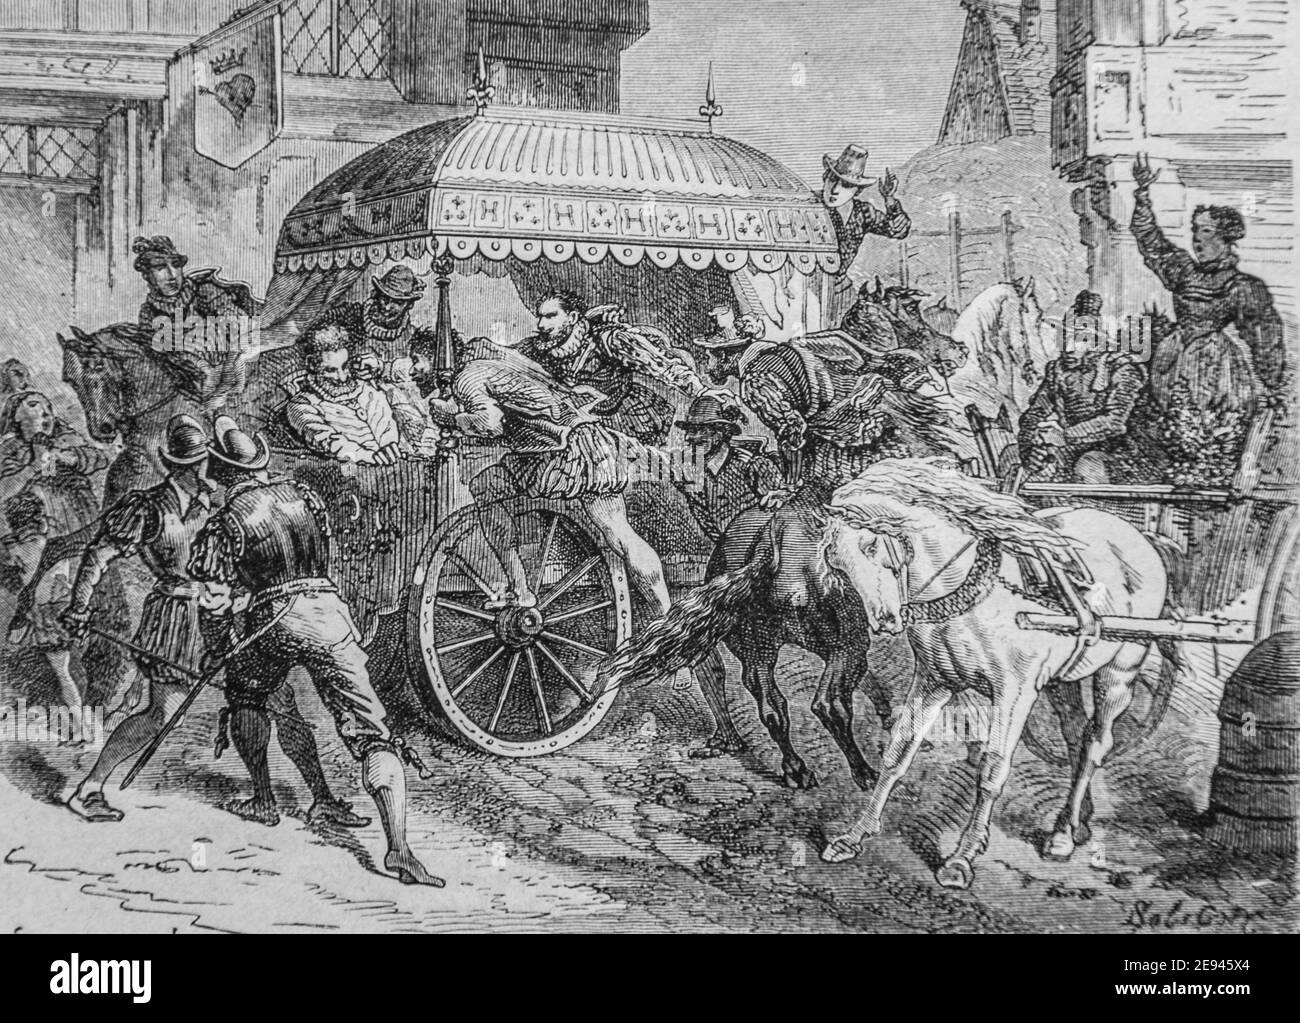 Assassinat d'henri IV1500-1600, histoire populaire de france par henri martin, editeur furne 1860 Foto Stock